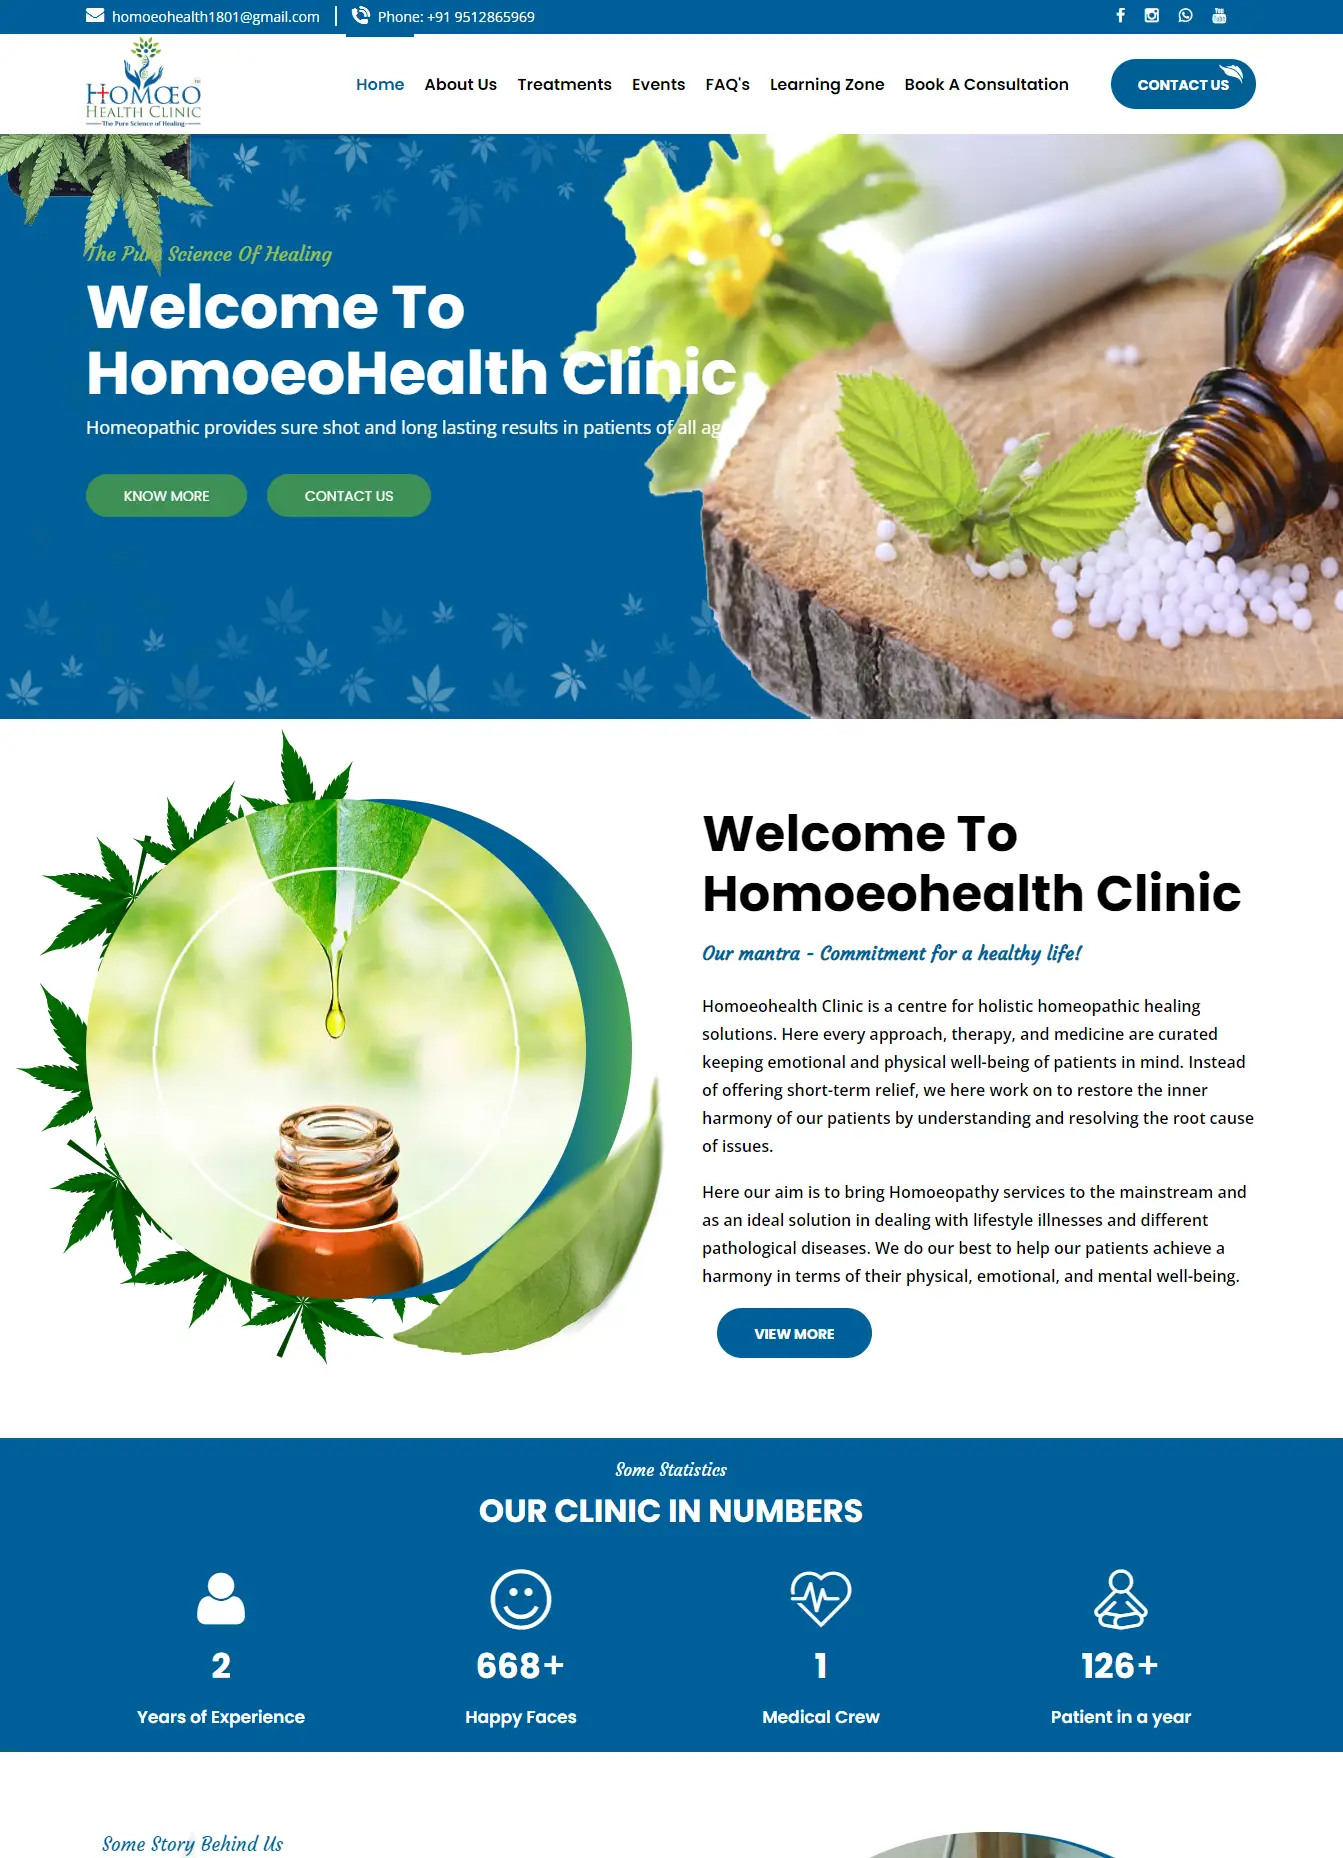 Homoeo Health - Portfolio Website